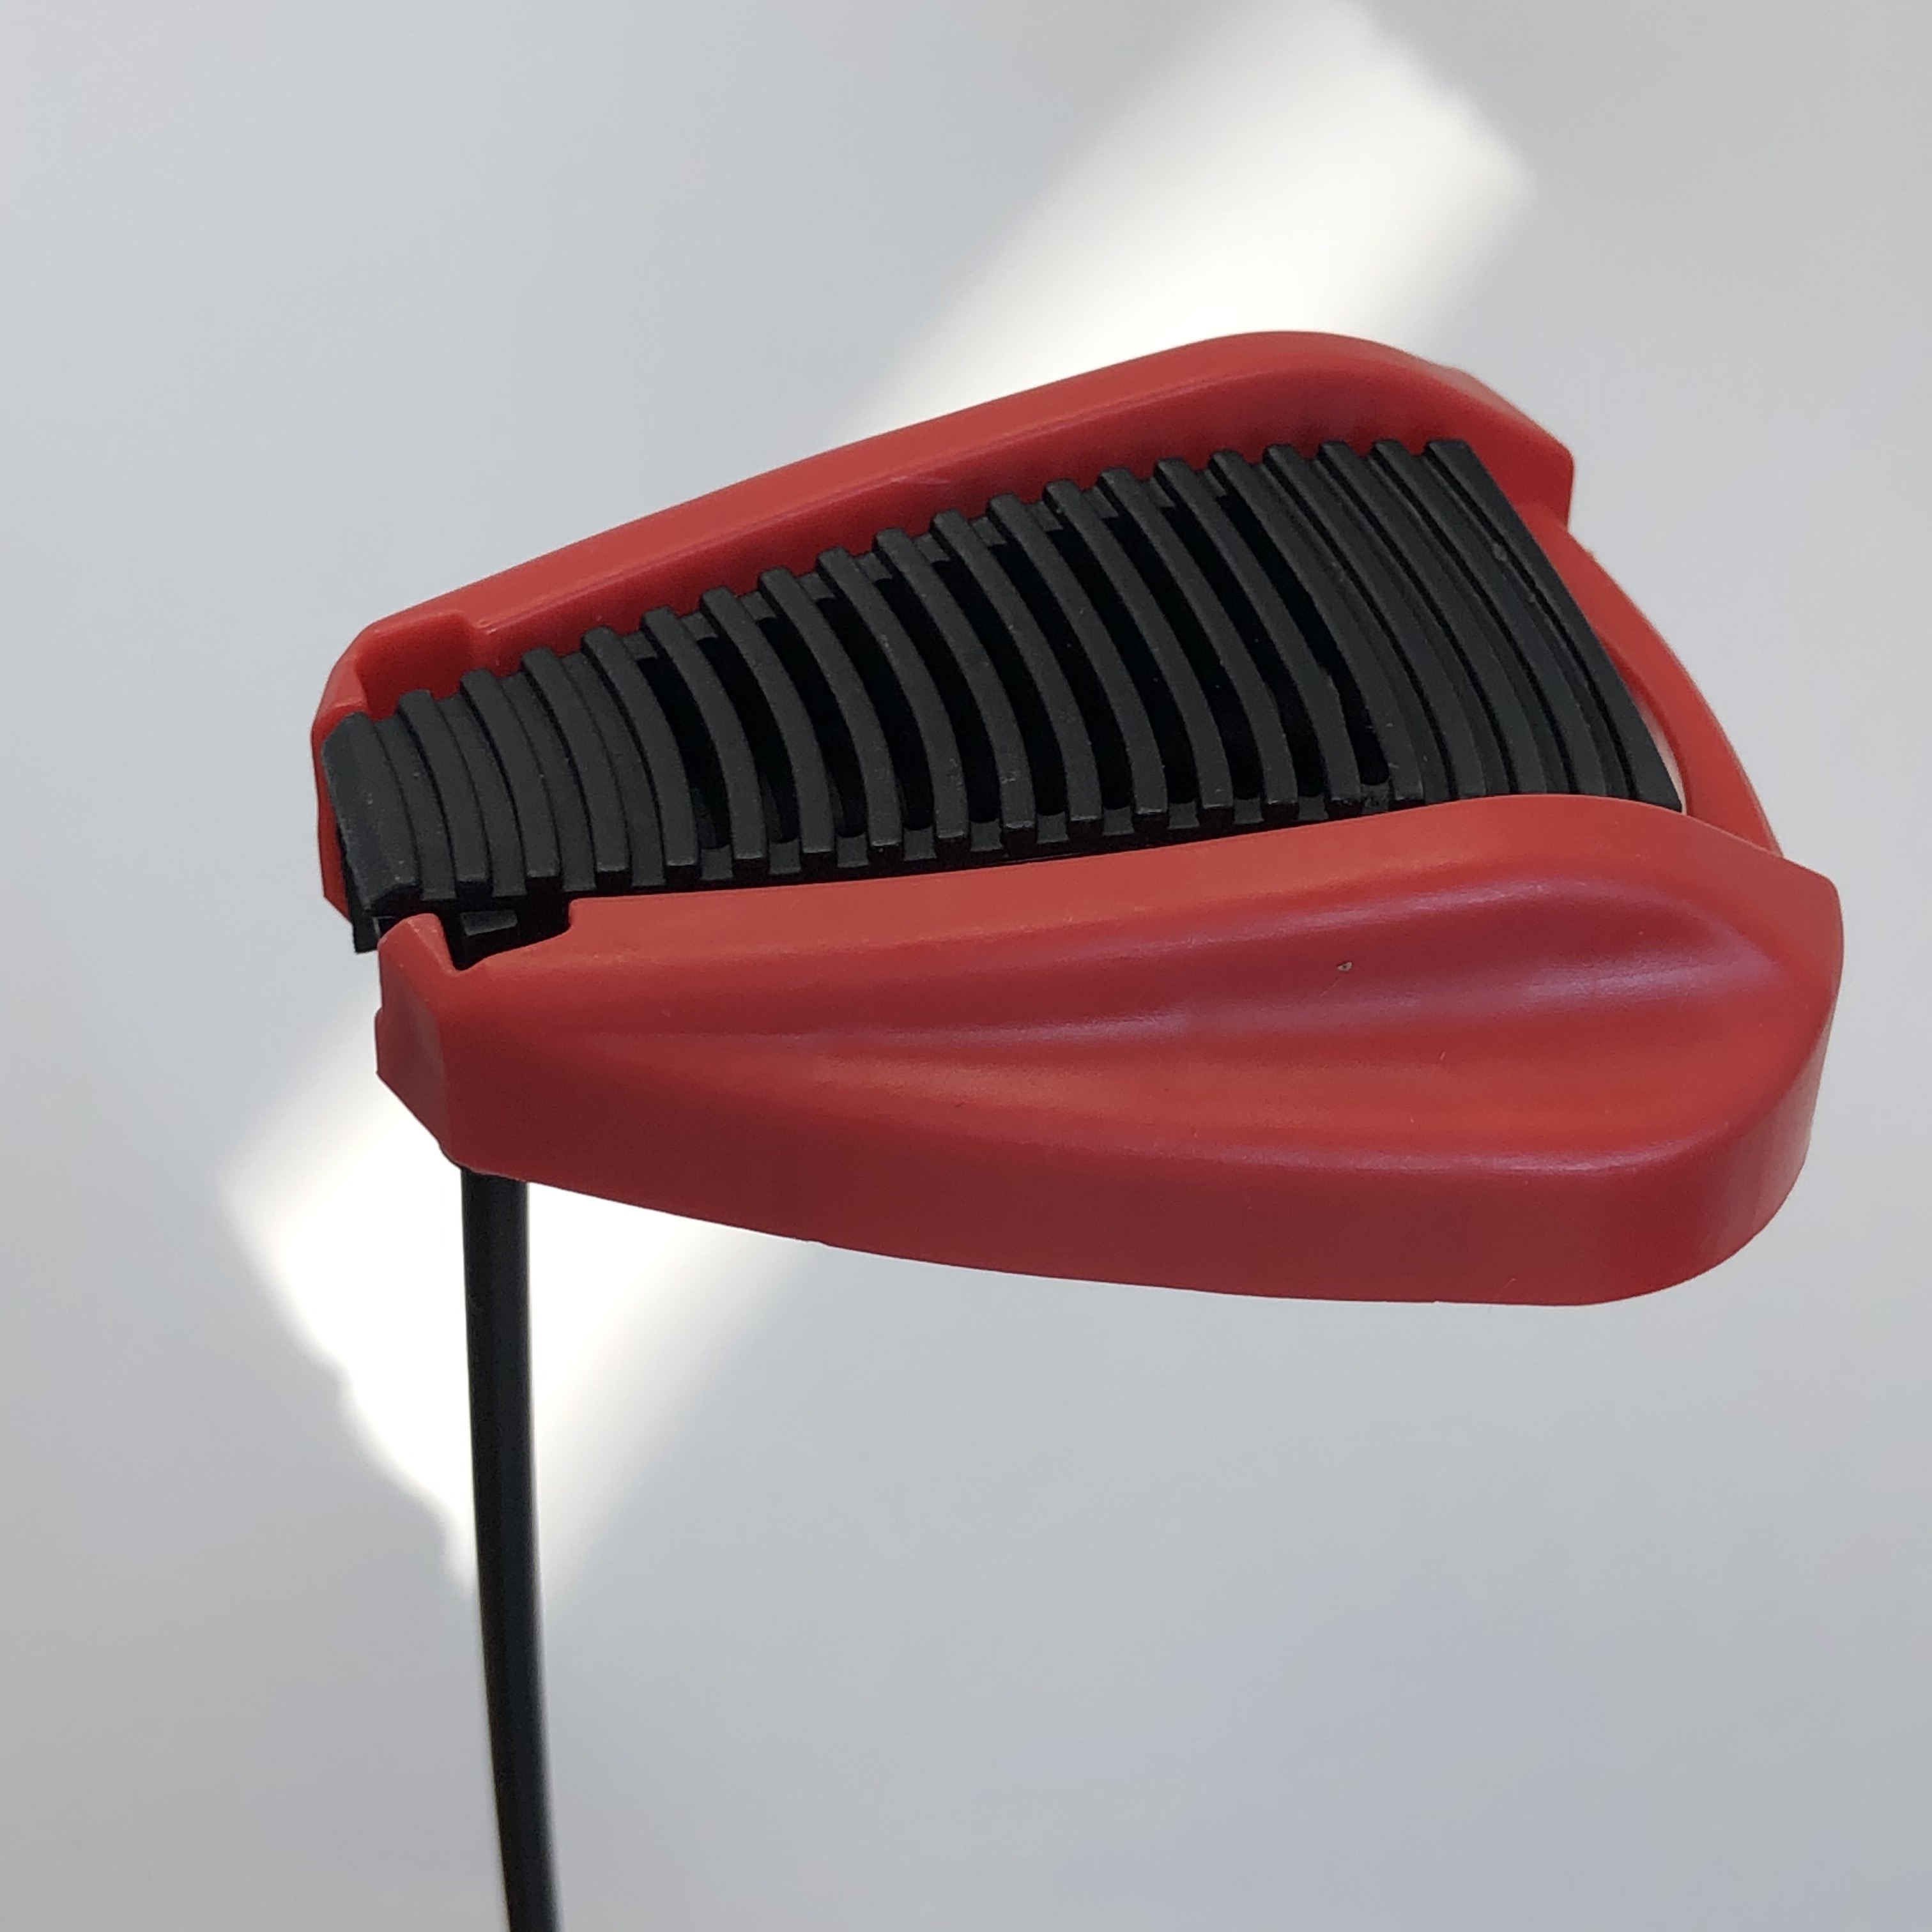 Bico de espuma de espuma - dispensador de espuma denso para lavagem de carros e limpeza doméstica - espessura de espuma ajustável